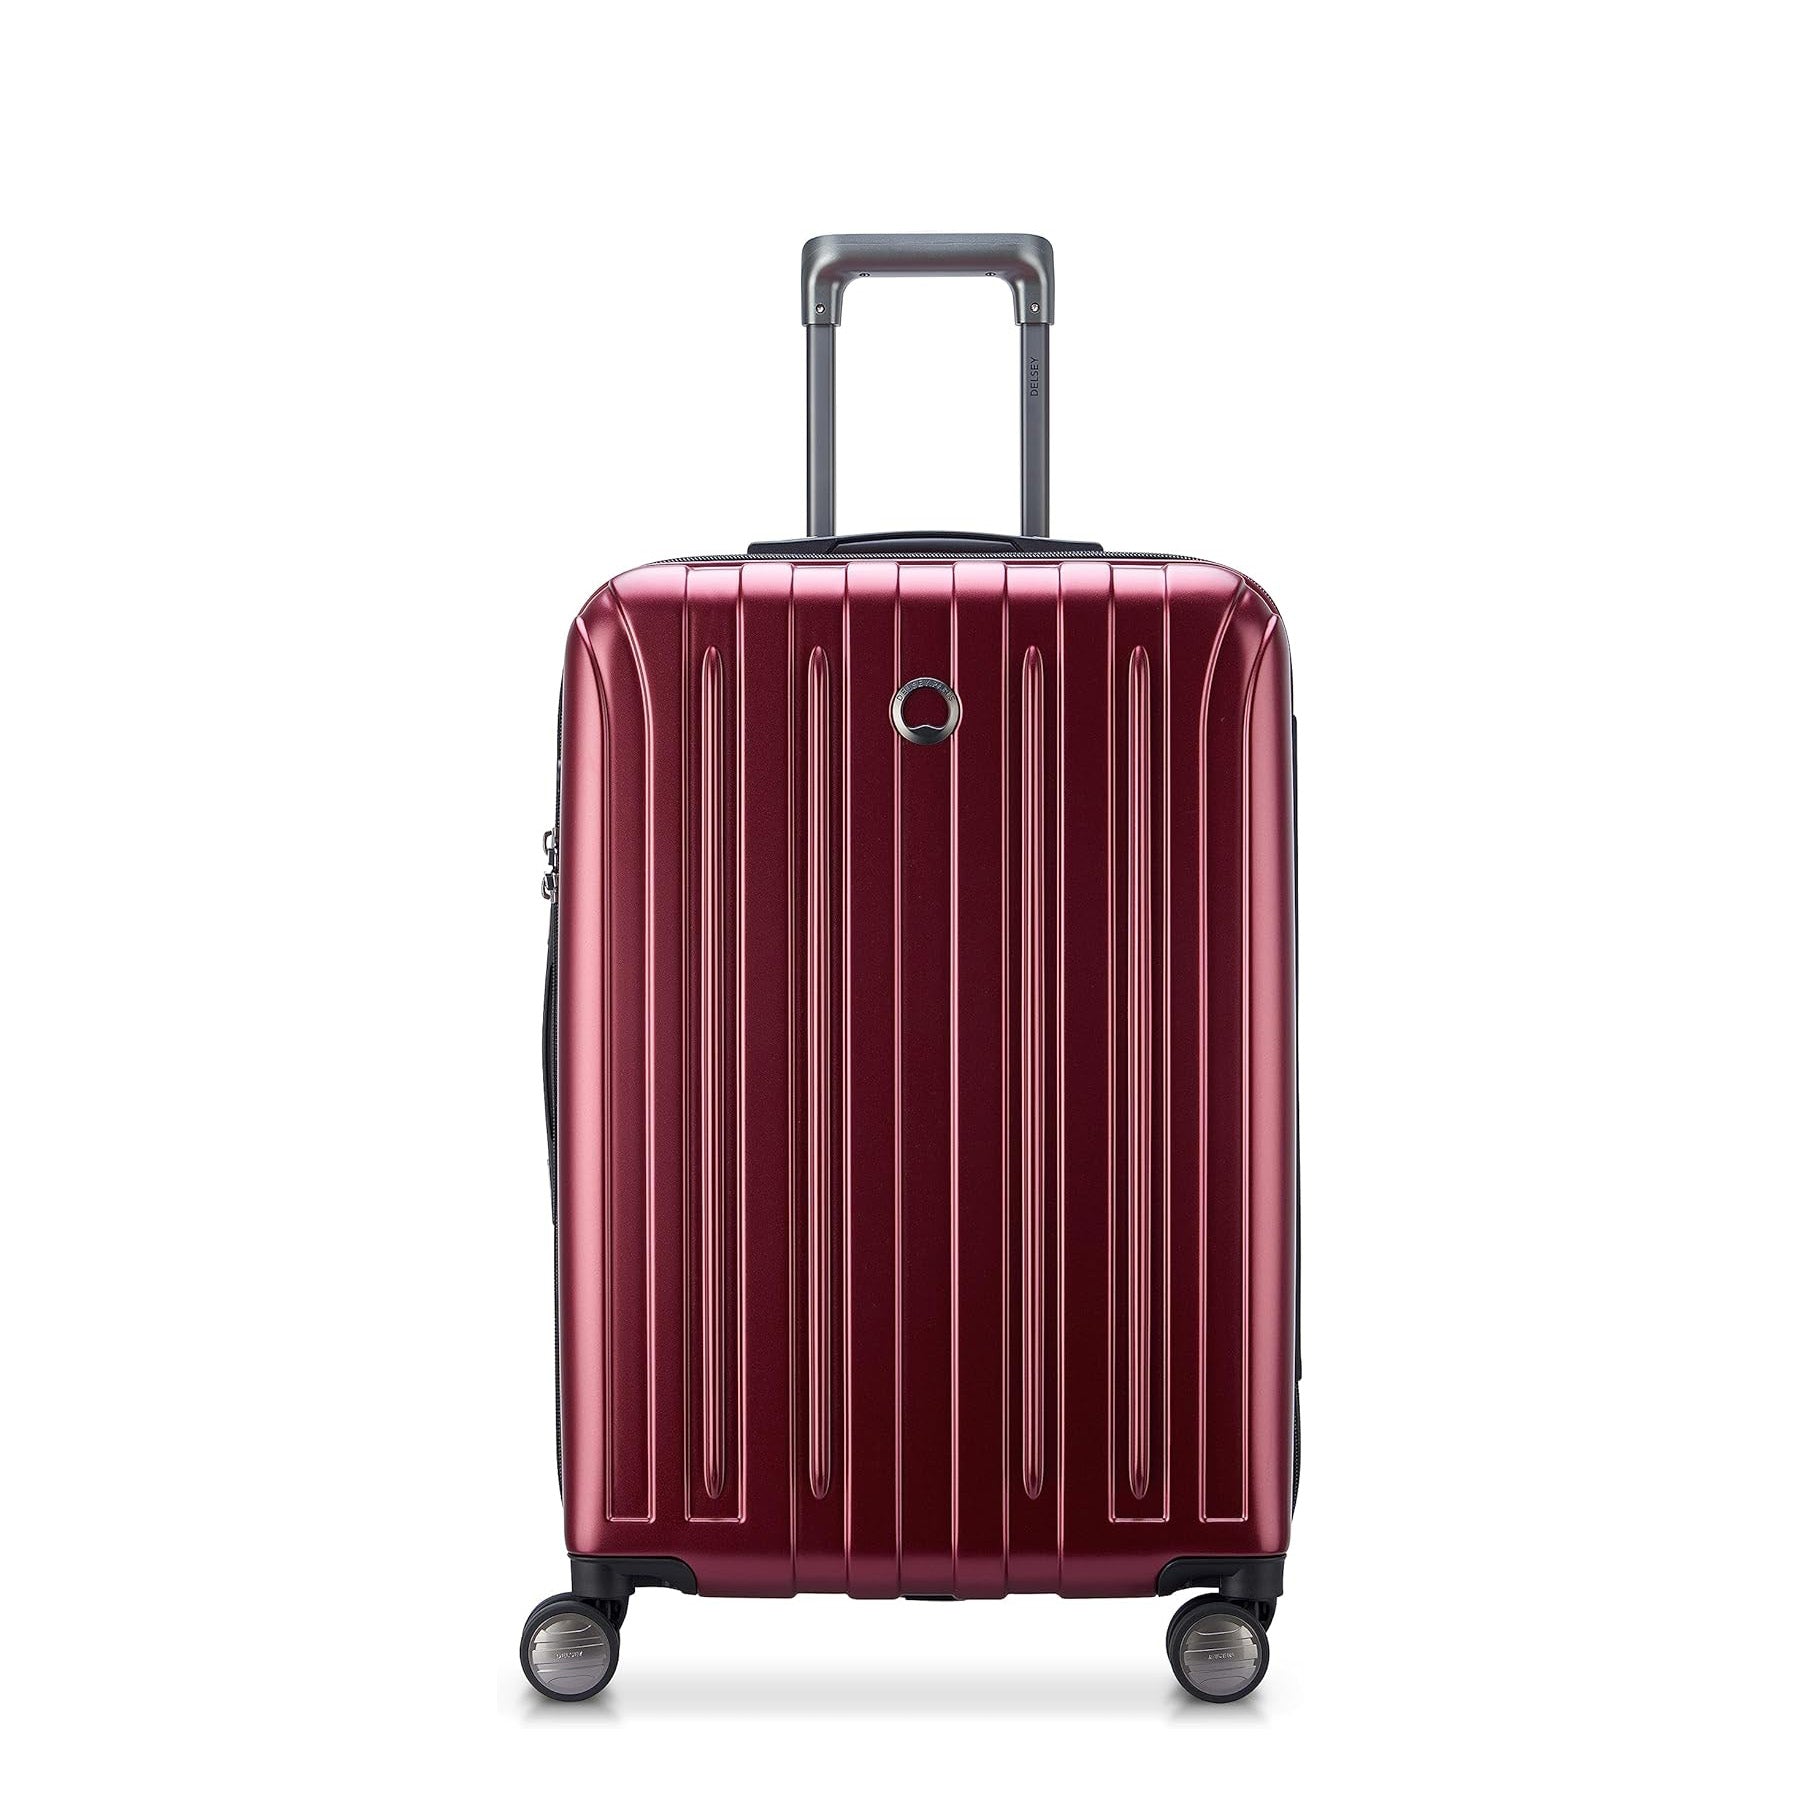 ◆新品未使用◆DELSEY スーツケースMよろしくお願いします